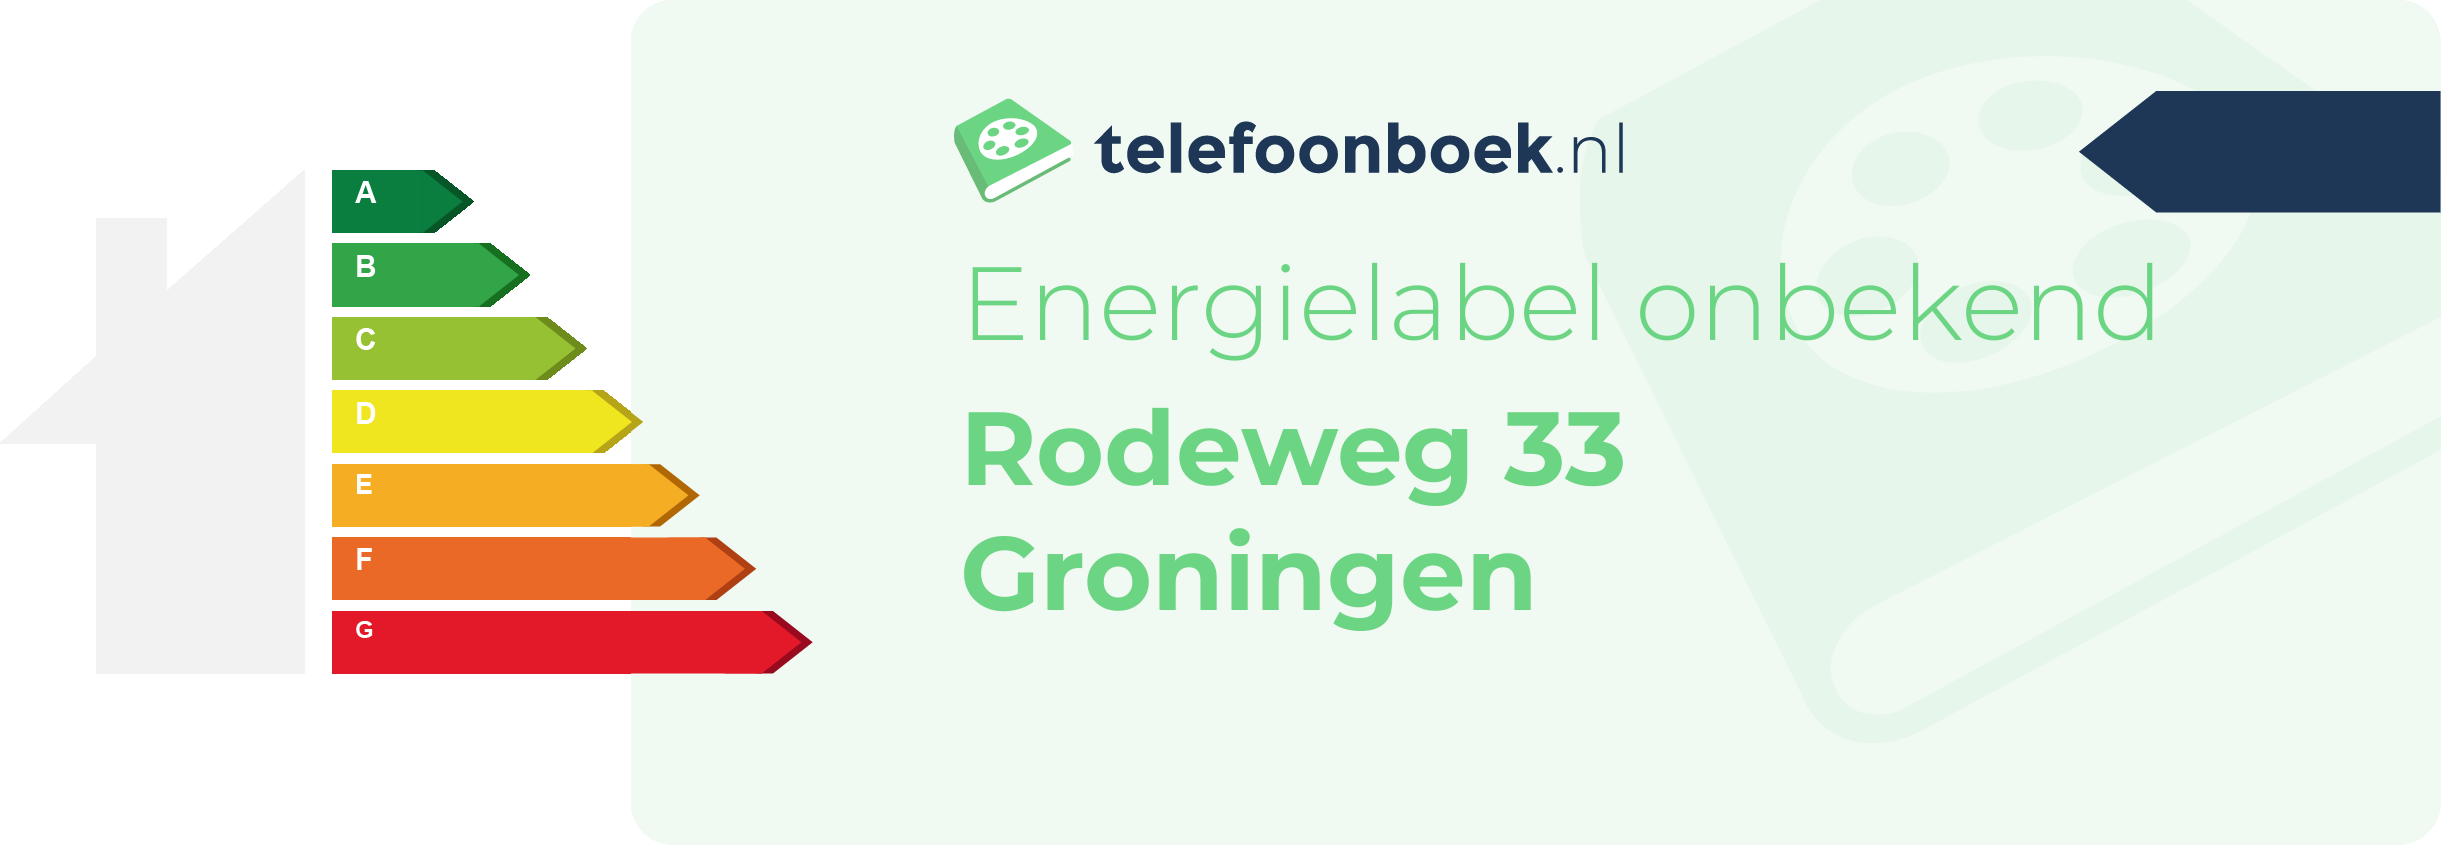 Energielabel Rodeweg 33 Groningen